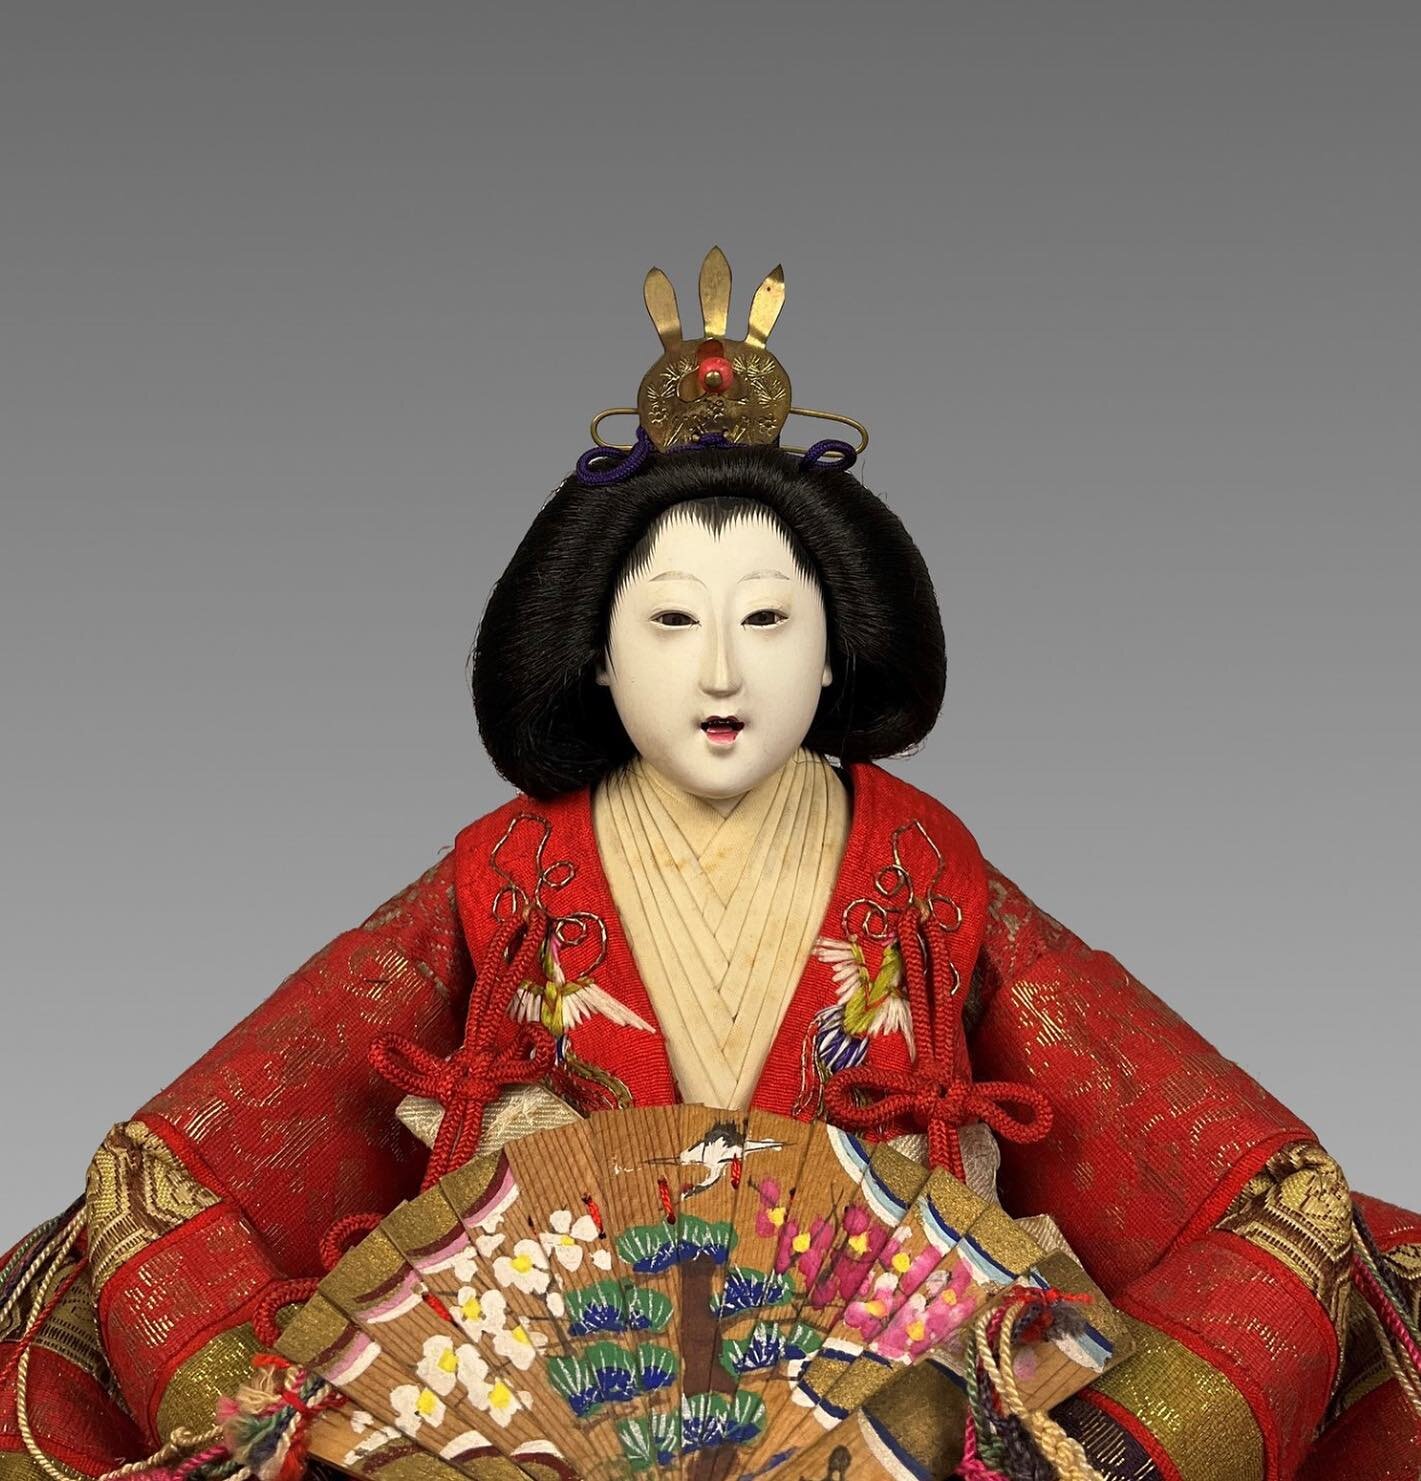 Meiji period dolls. Meiji Period Dolls.  #japan #japanese #japanesedoll #japaneseart #japaneseartist #japaneseantique #japanesegallery #art #artist #artoninstagram #antique #artgallery #artmuseum #dolls #japanesedollfestival